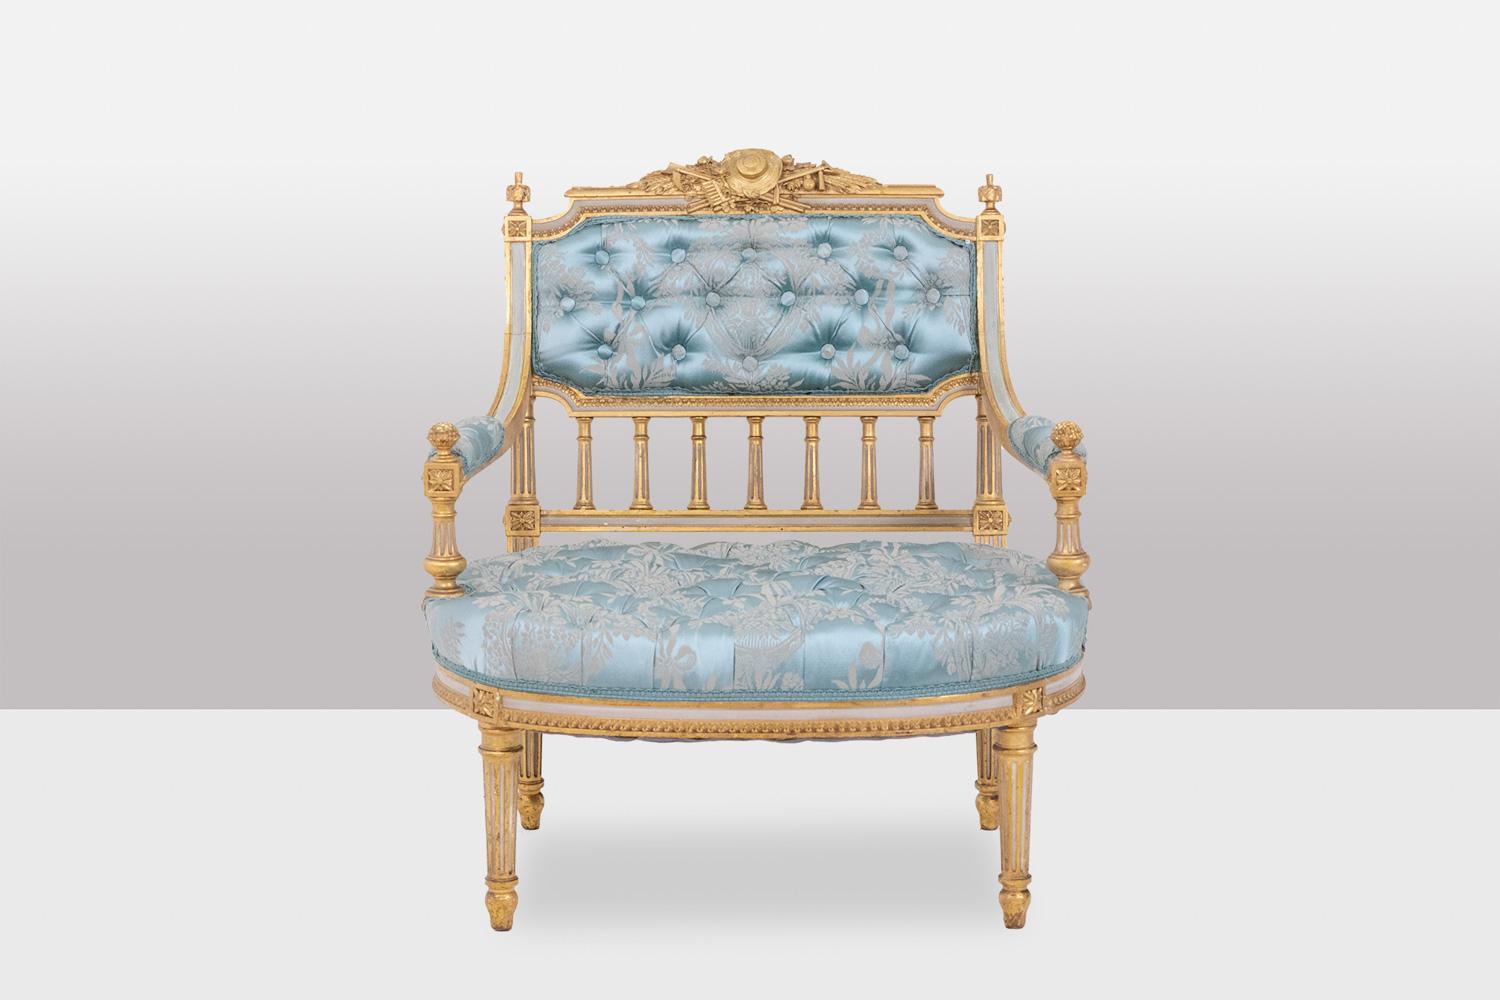 Kaminstuhl im Louis-XVI.-Stil aus vergoldetem und lackiertem Holz. Gepolsterter Sitz, Rückenlehne und Manschetten, die Oberseite der Rückenlehne mit den Attributen der Musik verziert, Verbindungswürfel mit Sternen verziert, Dekoration von Spalten